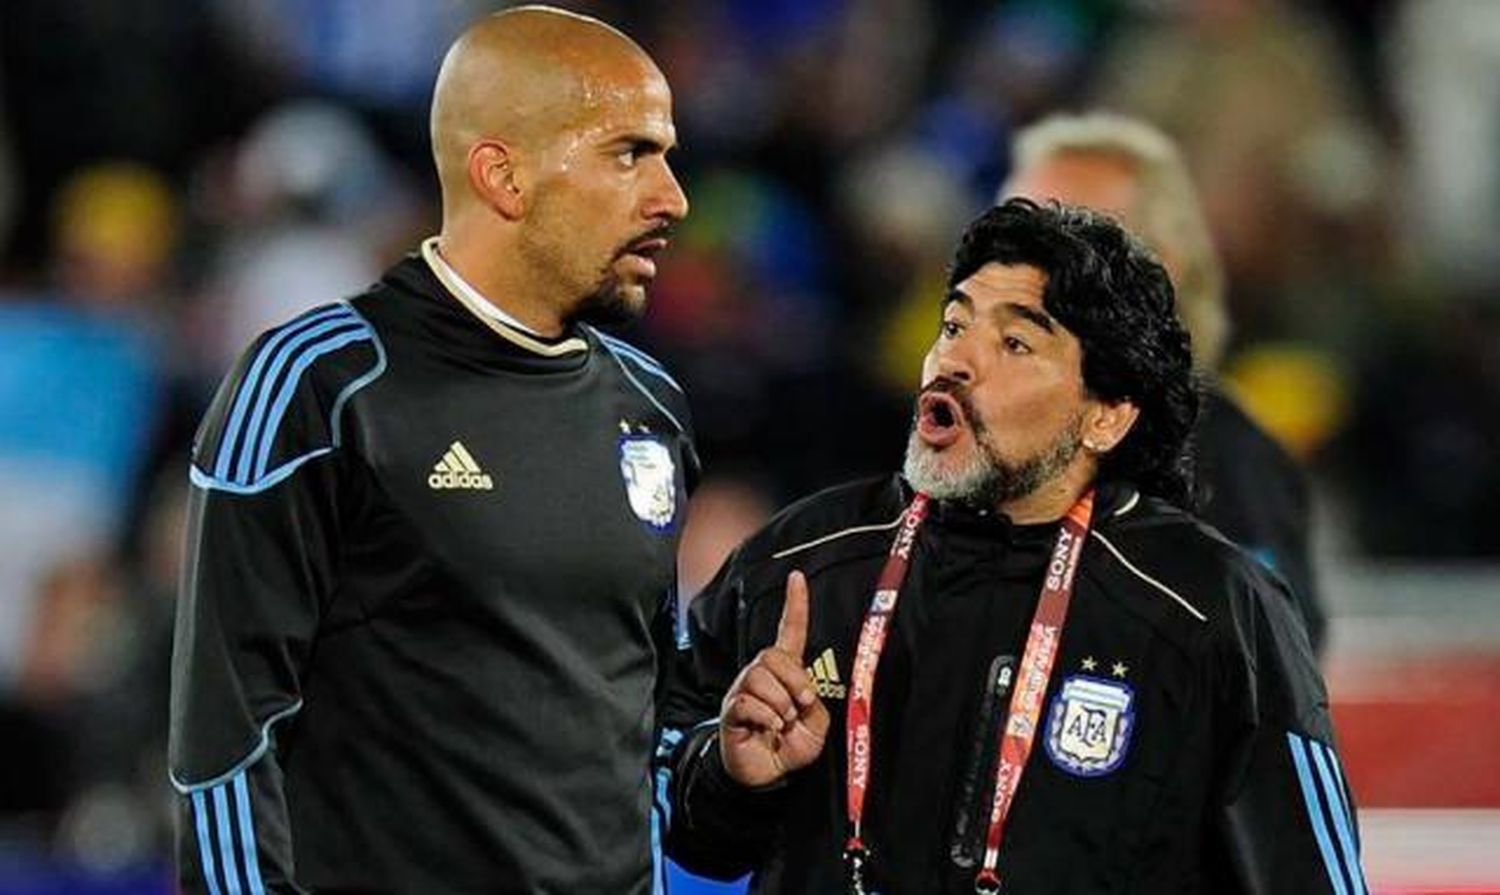 Verón le deseó suerte a Maradona, pero atendió a Morla: "Debemos bajar los niveles de histeria"